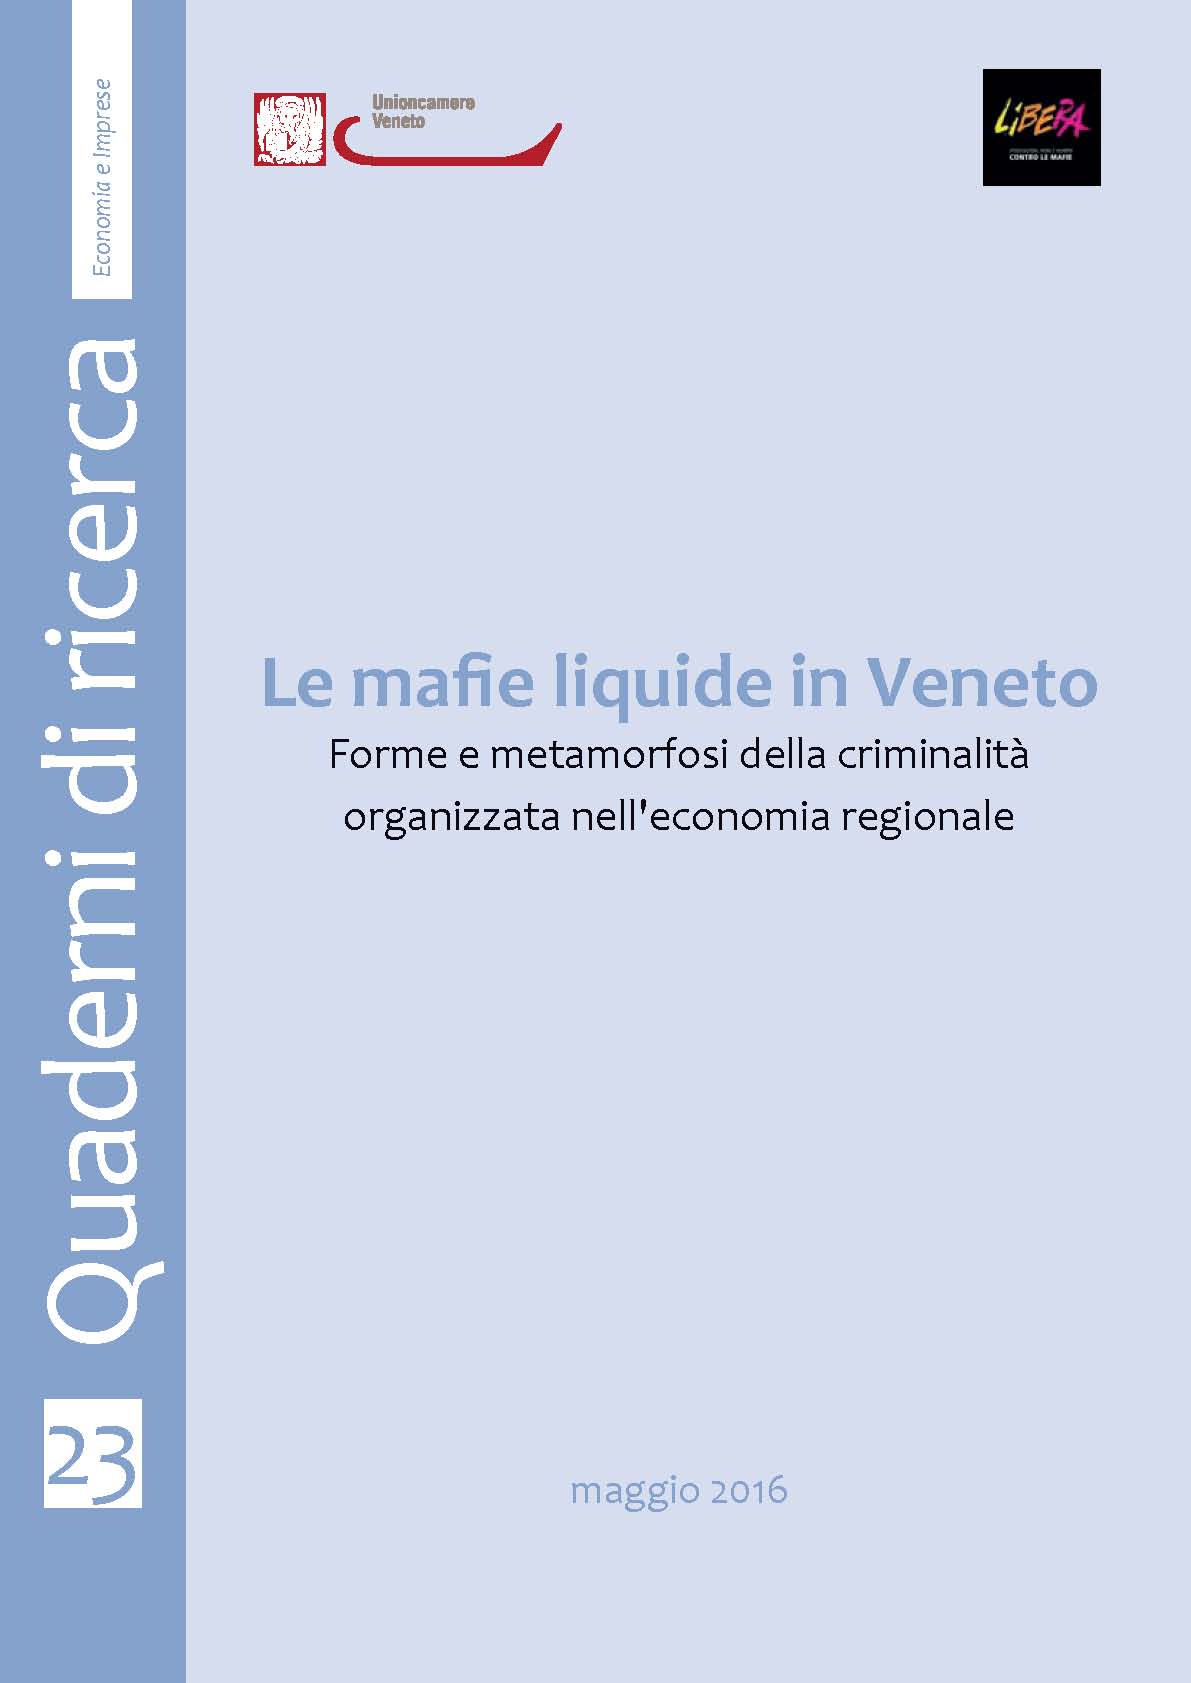 23 - Le mafie liquide in Veneto